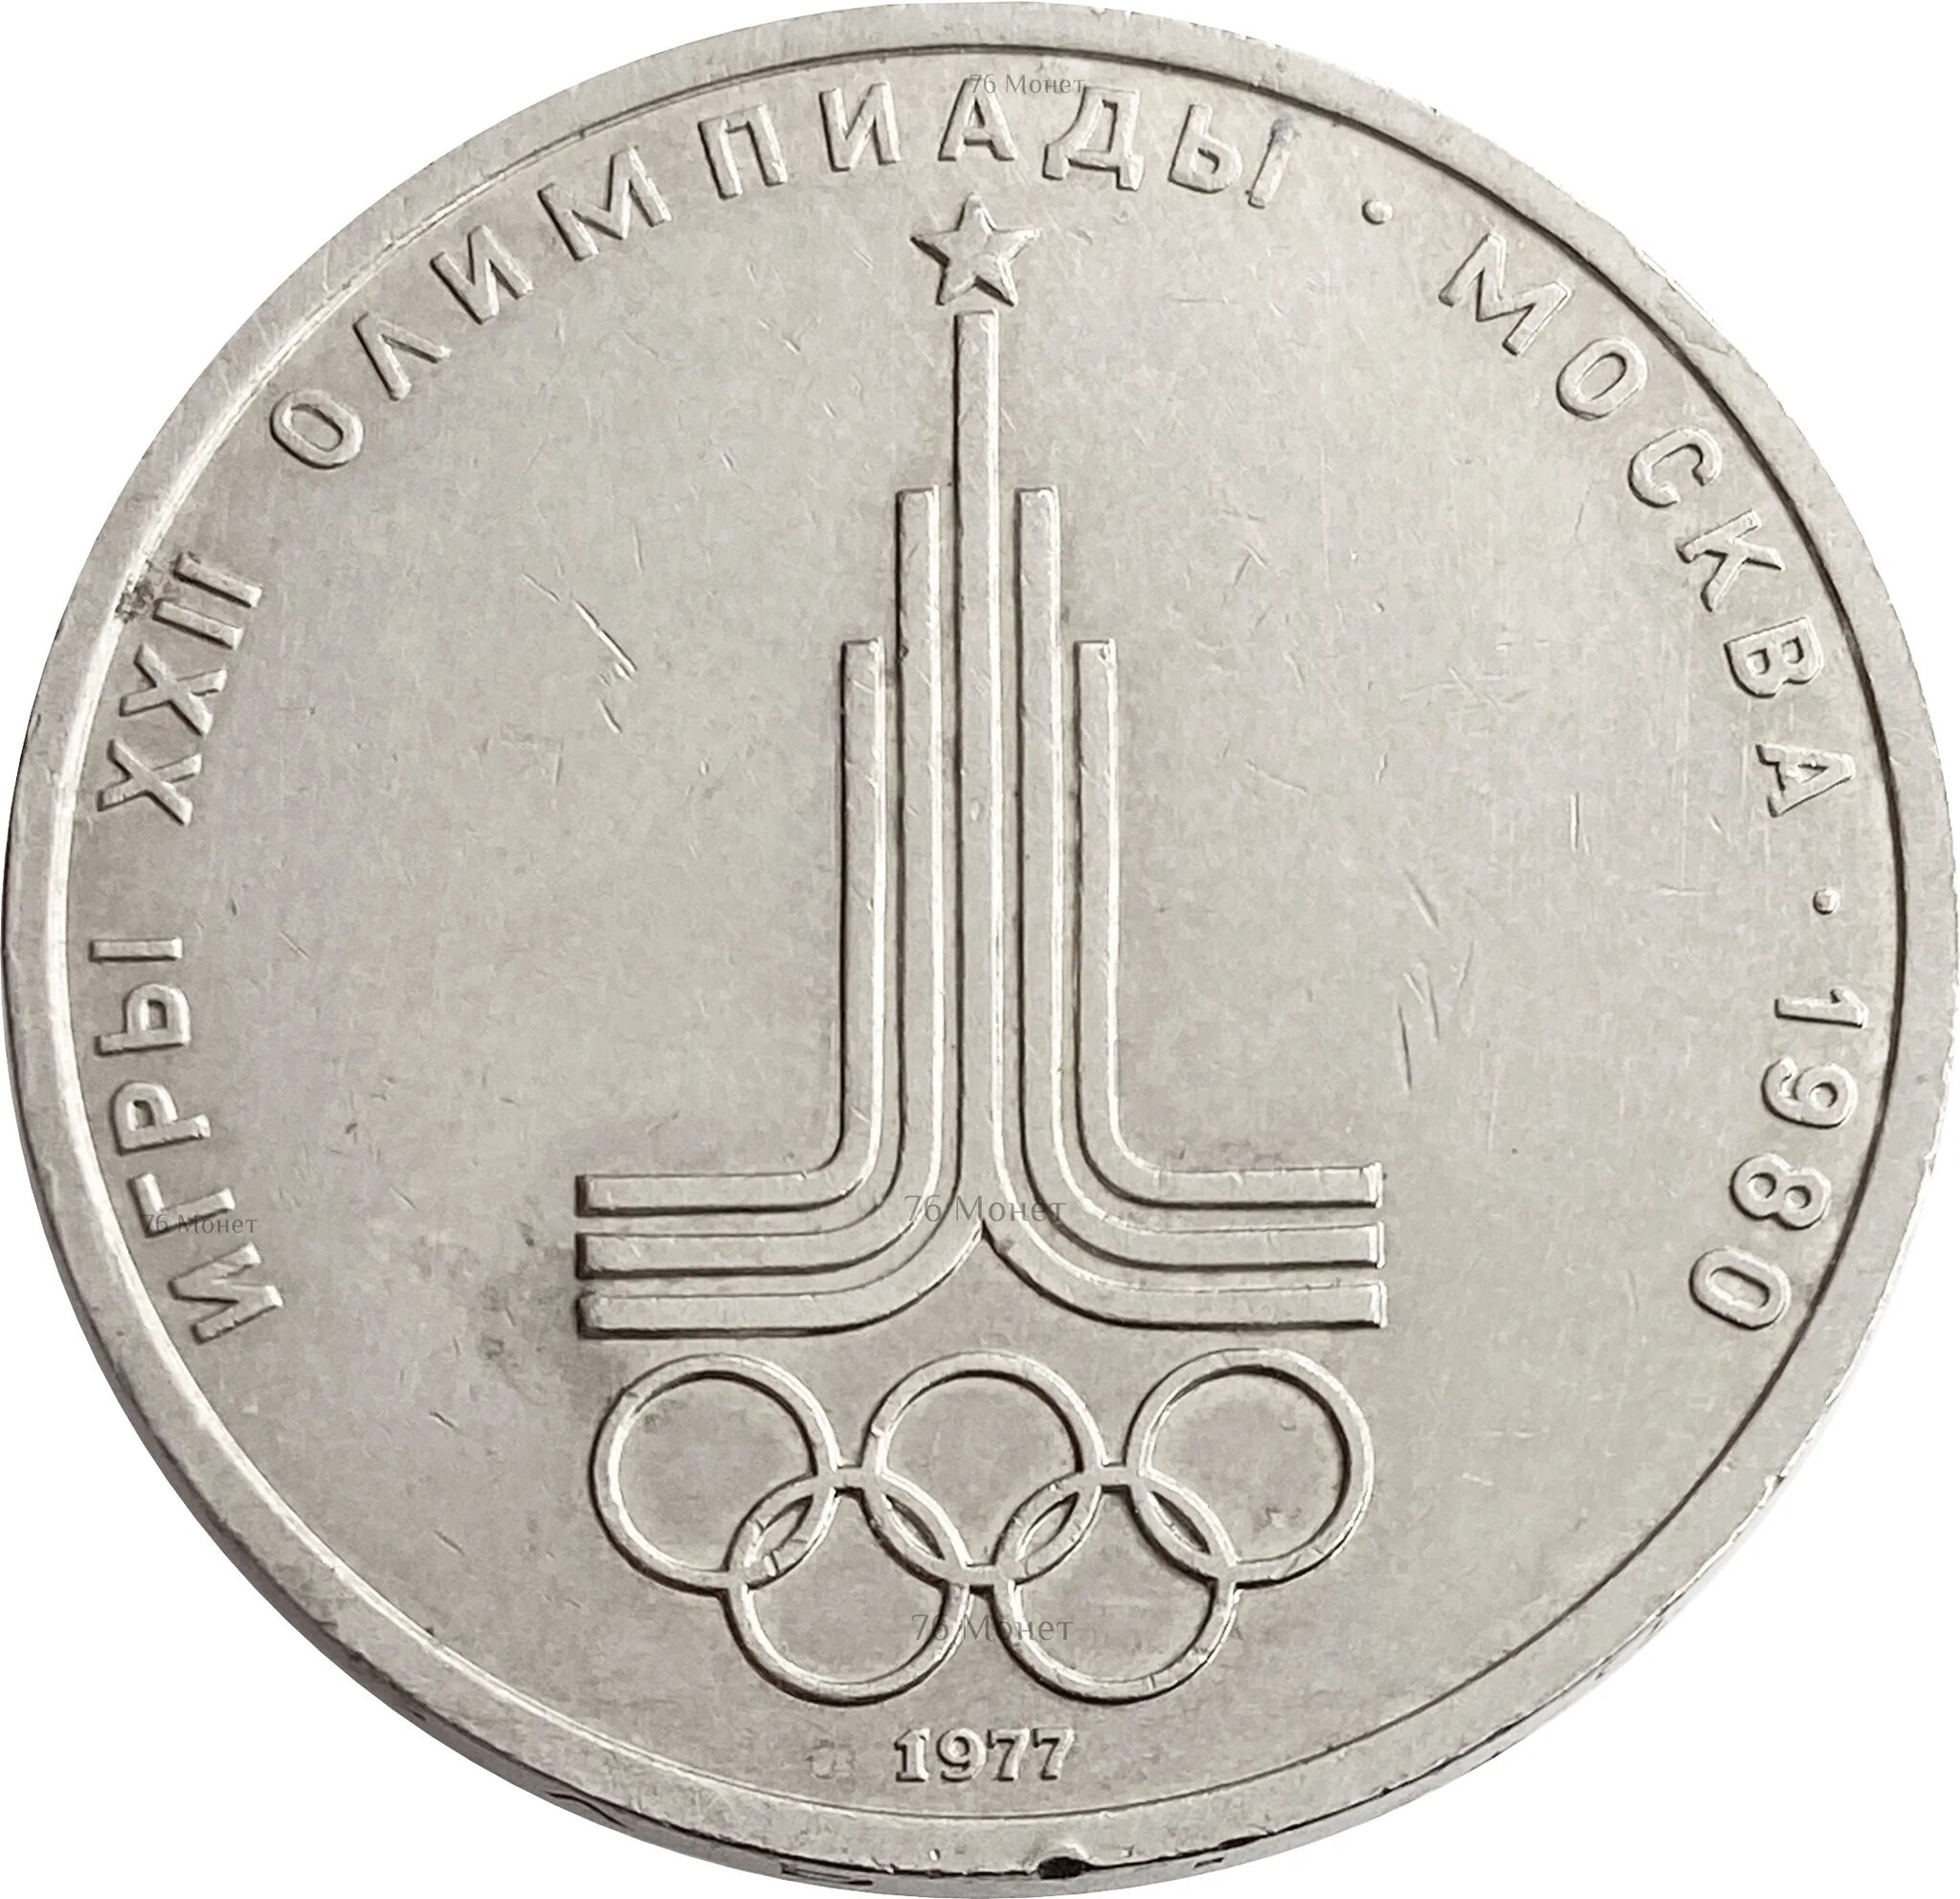 Игры за один рубль. Монета СССР 1 рубль 1980 года Олимпийский.